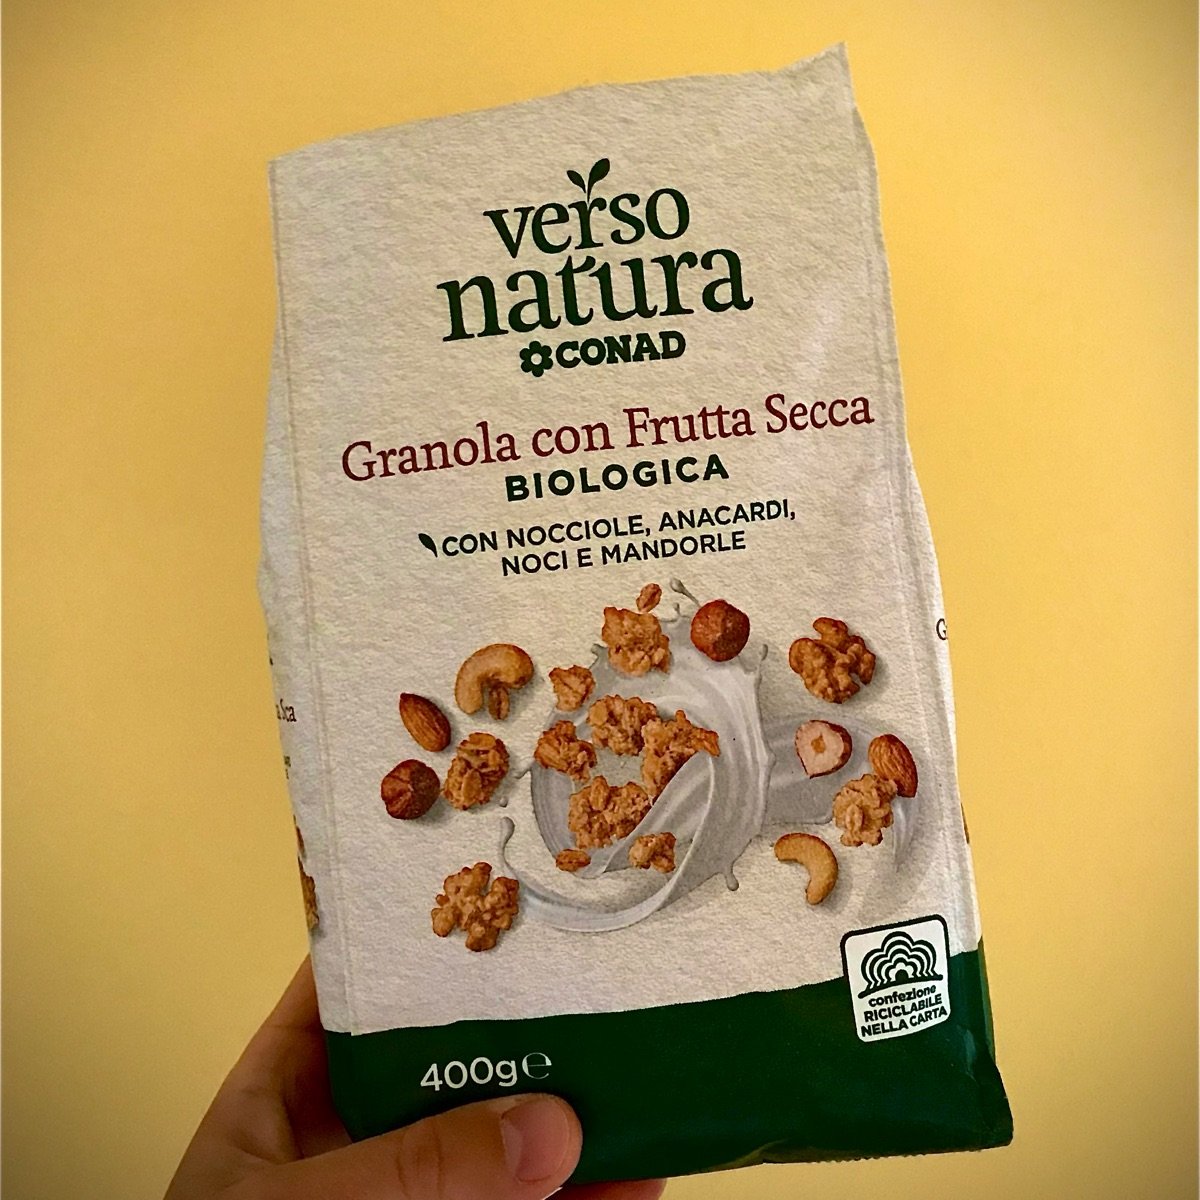 Conad Verso Natura Granola con frutta secca Reviews | abillion